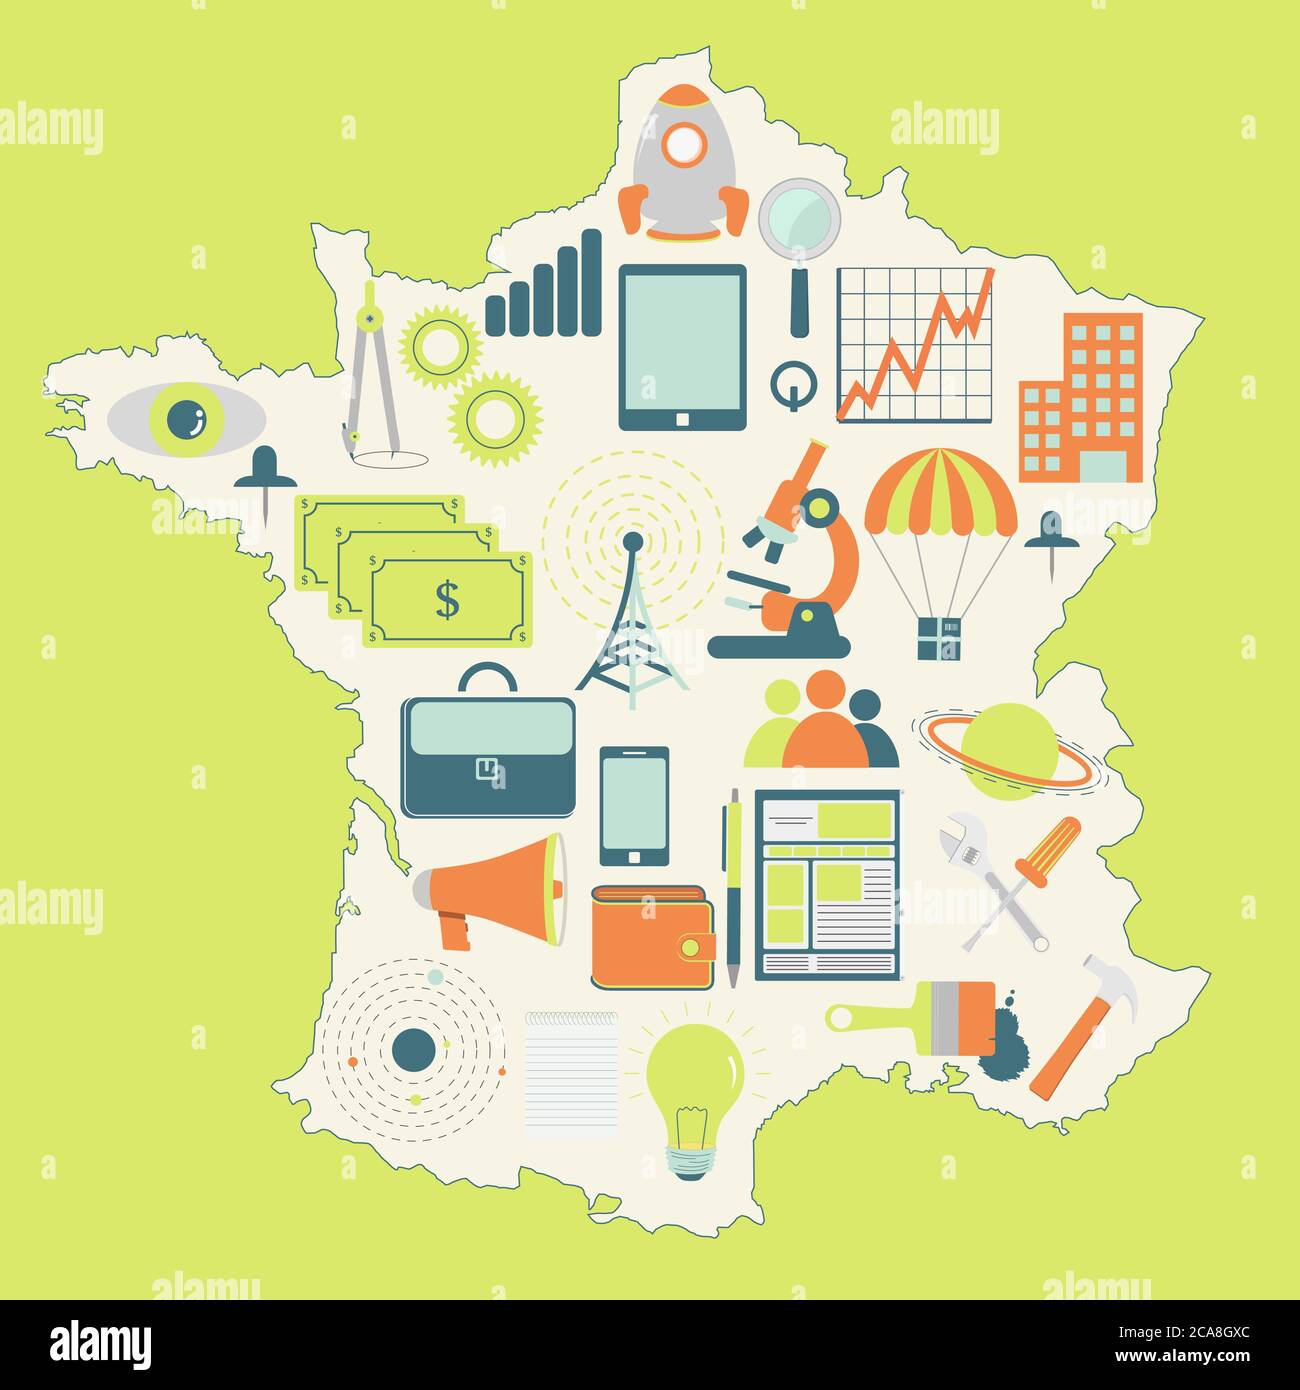 Konturkarte von Frankreich mit Ikonen der Technologie, der Wirtschaft, der Wissenschaft, der Kommunikation Stock Vektor